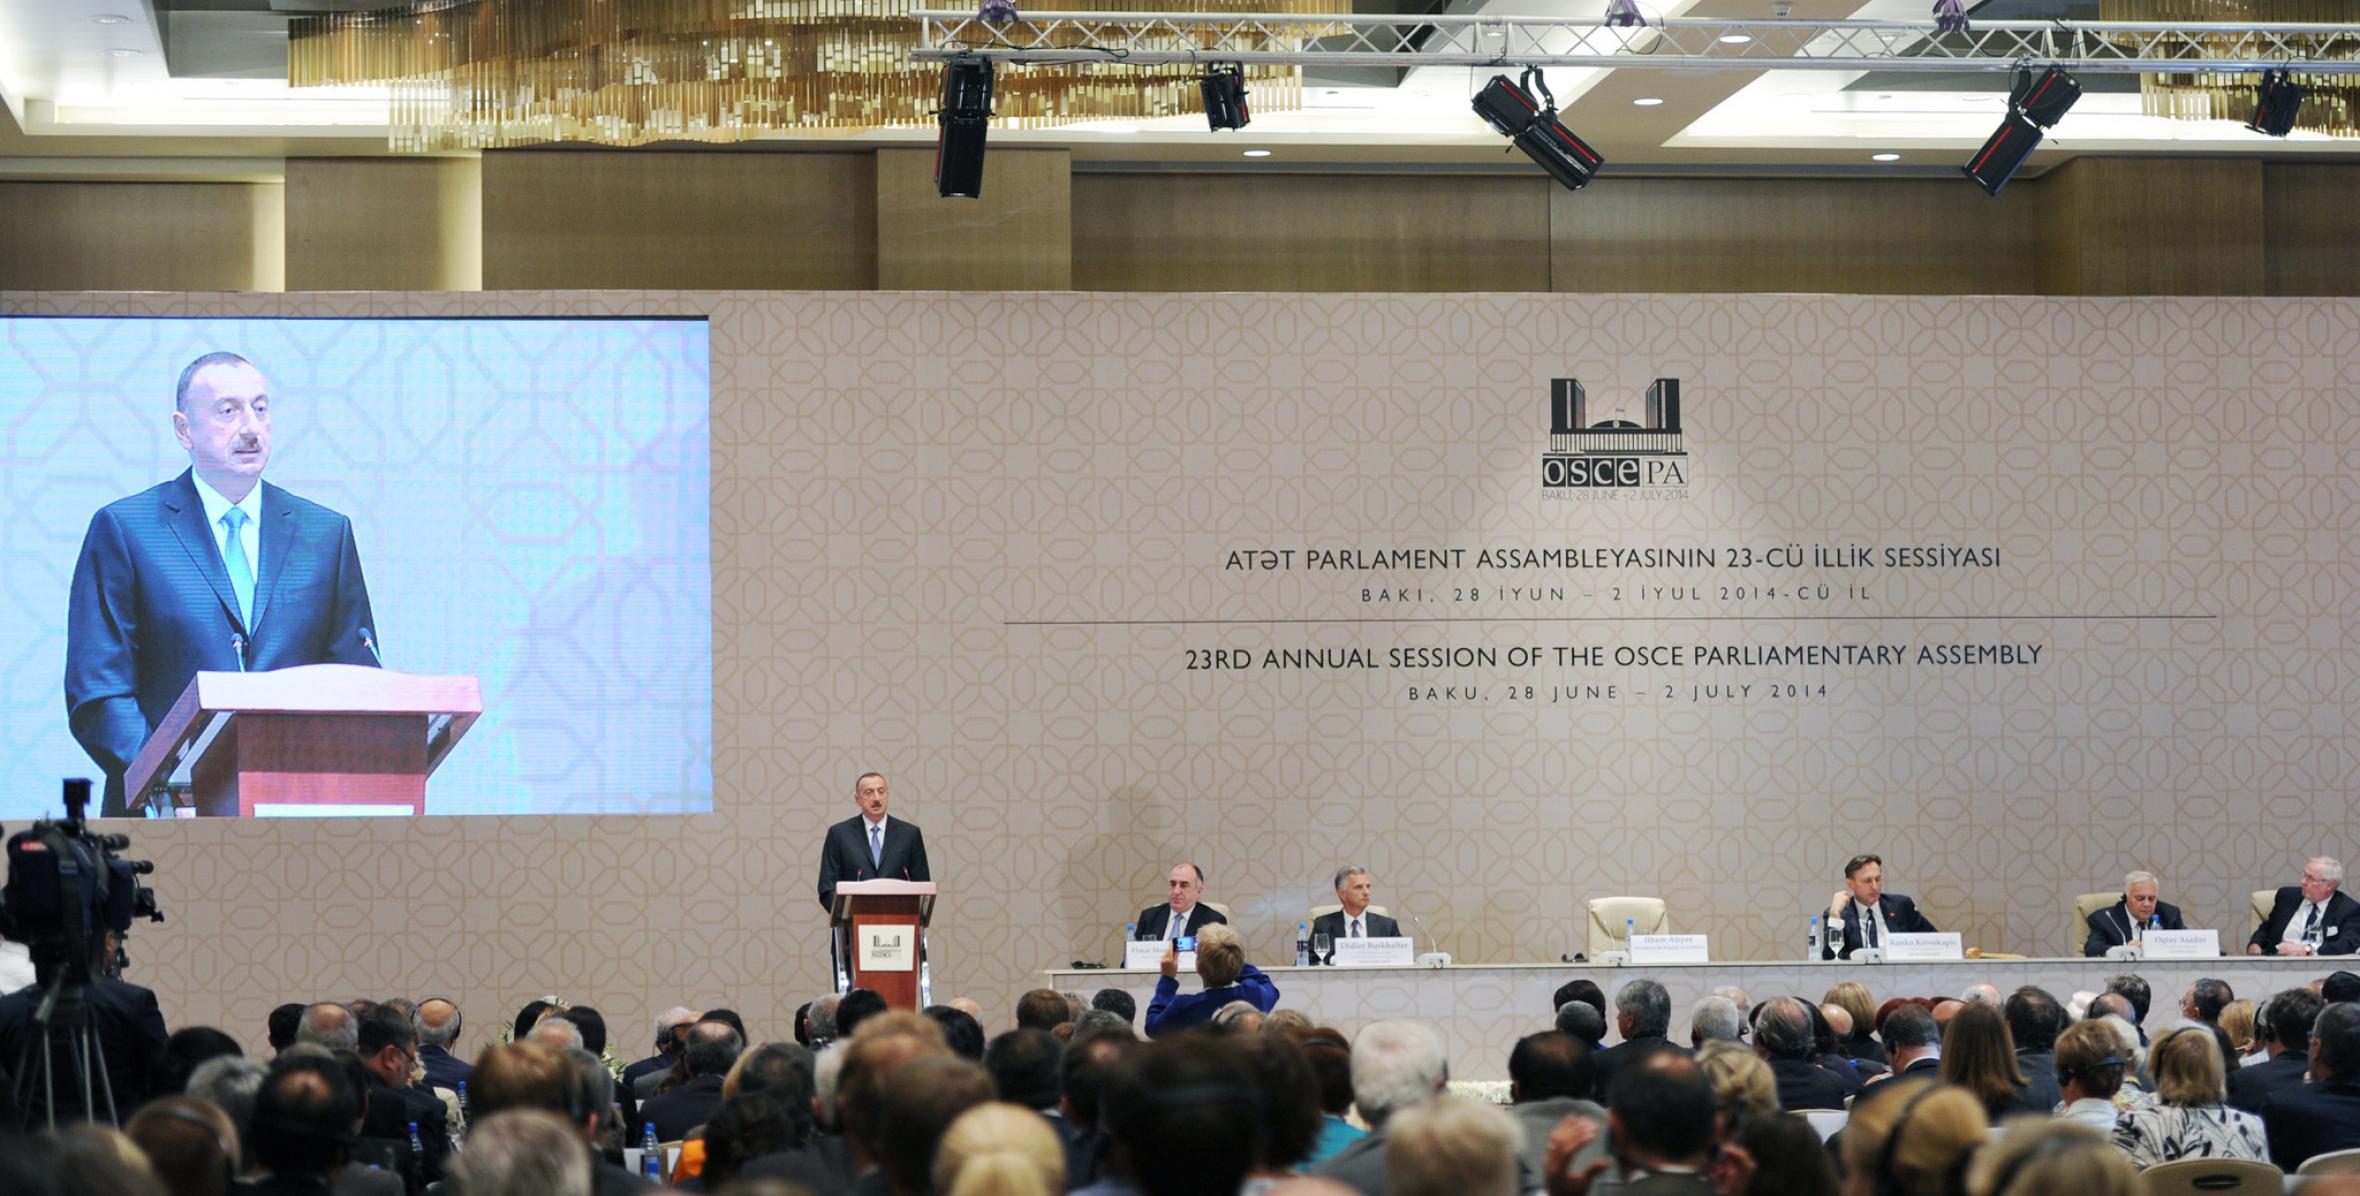 Речь Ильхама Алиева на открытии пленарного заседания 23-й ежегодной сессии Парламентской Ассамблеи ОБСЕ в Баку